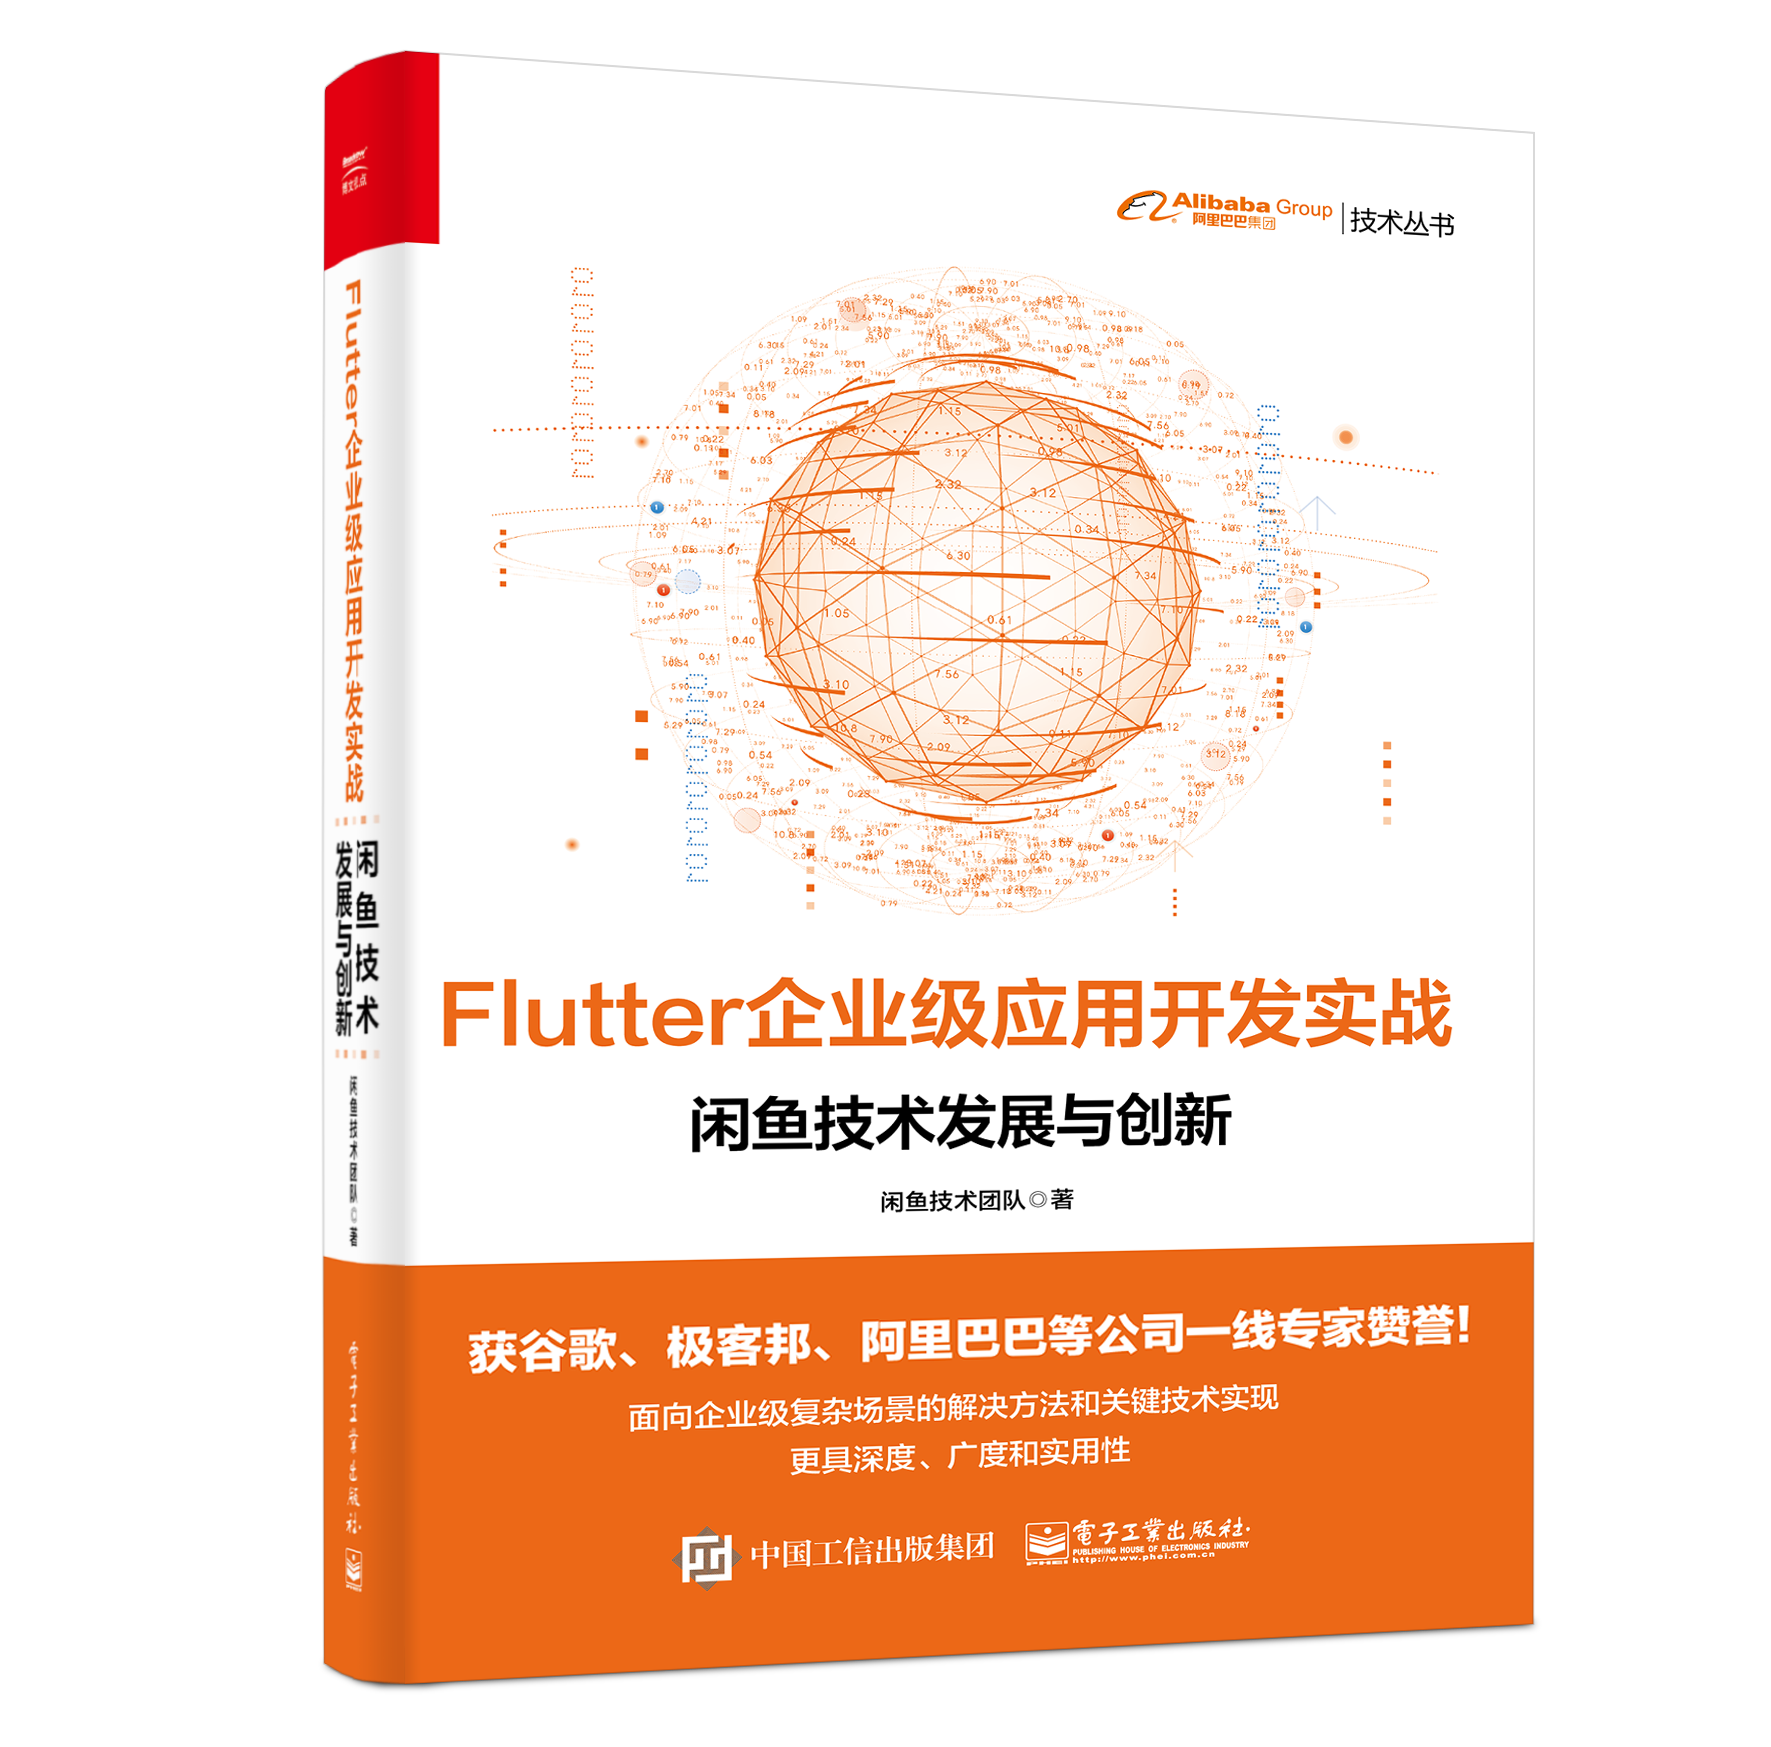 Flutter企业级应用开发实战-定稿fm(1).png